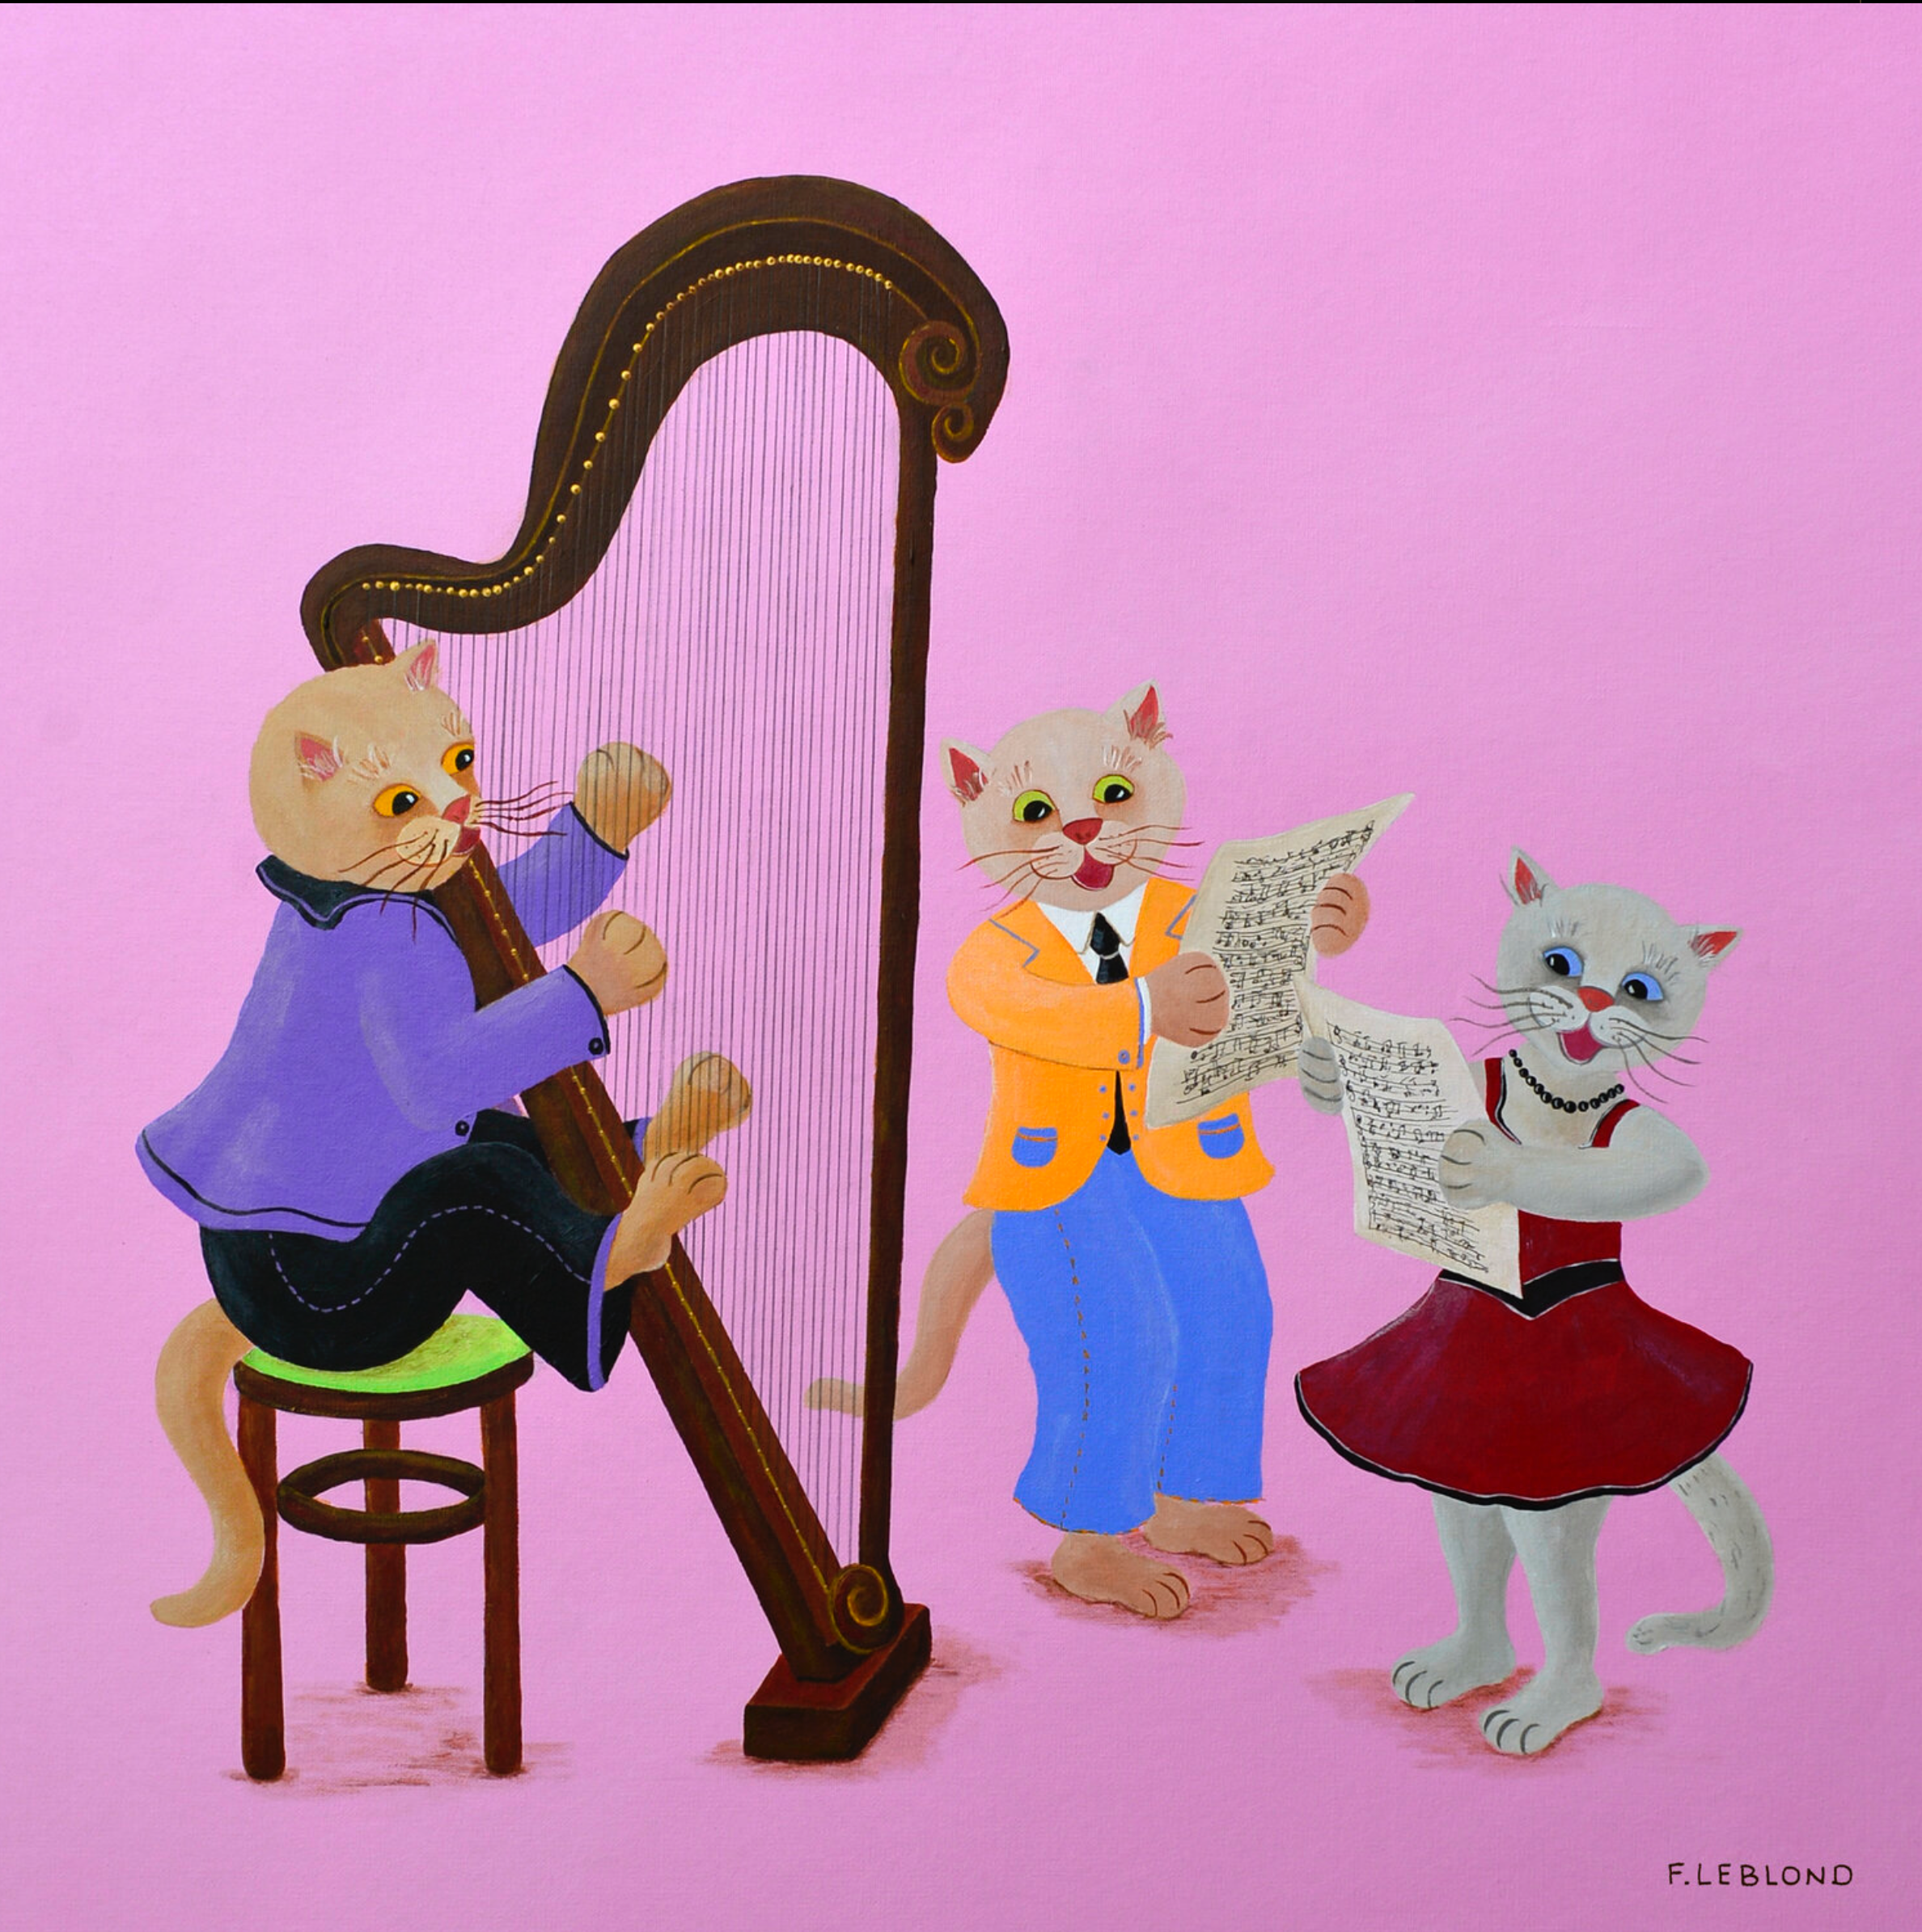 弗朗索瓦-拉布隆的 "Le Trio "揭示了在室内乐的彩色绘画中进行音乐创作的猫咪三人组